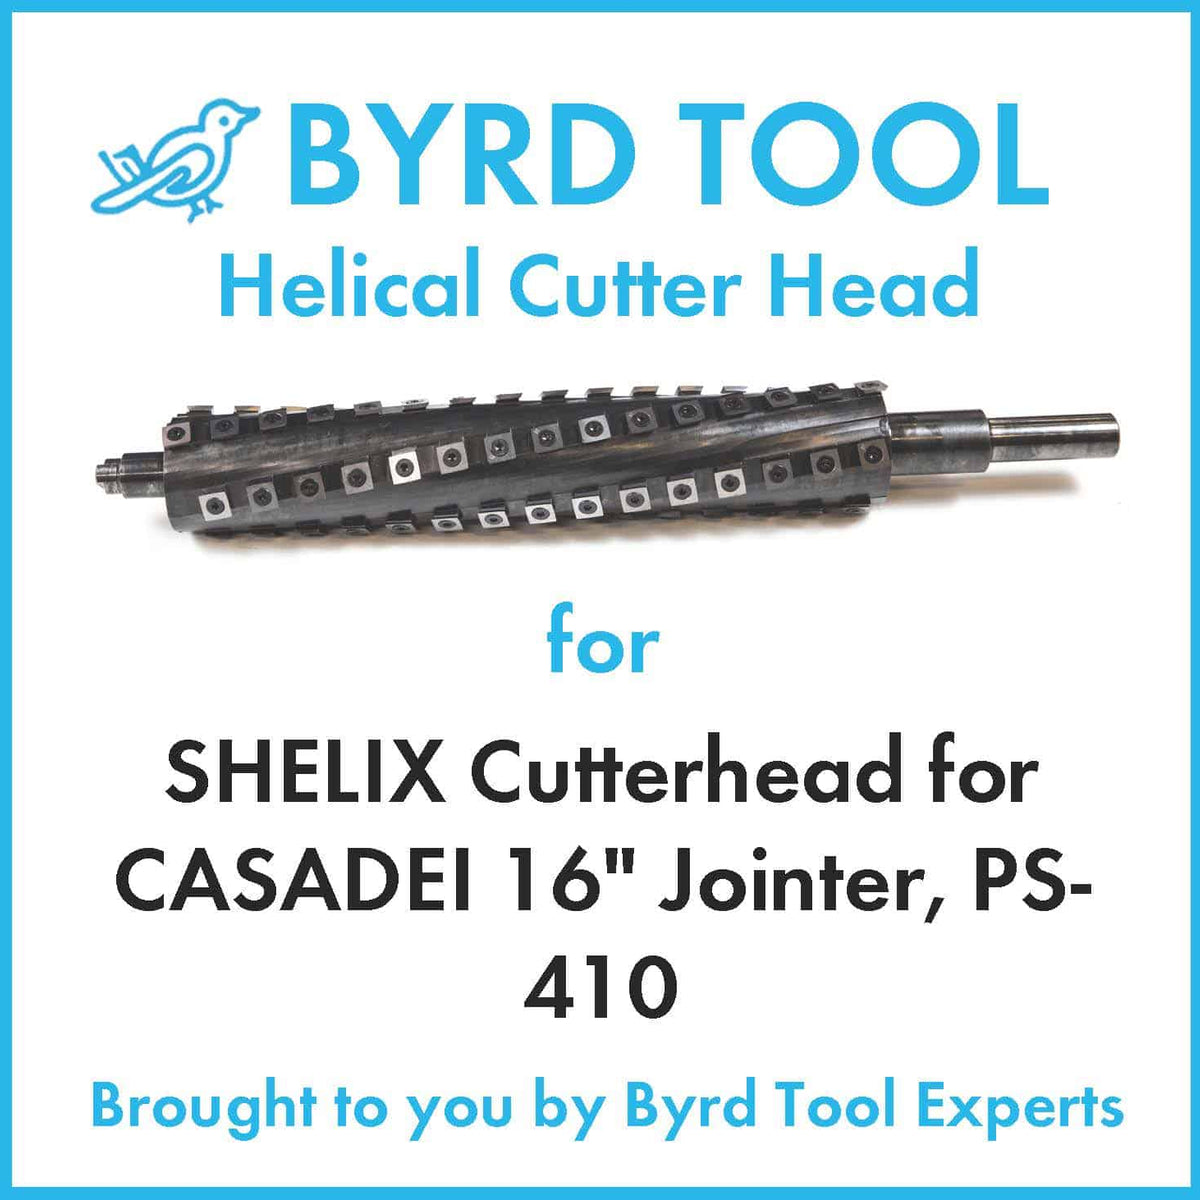 SHELIX Cutterhead for CASADEI 16″ Jointer, PS-410